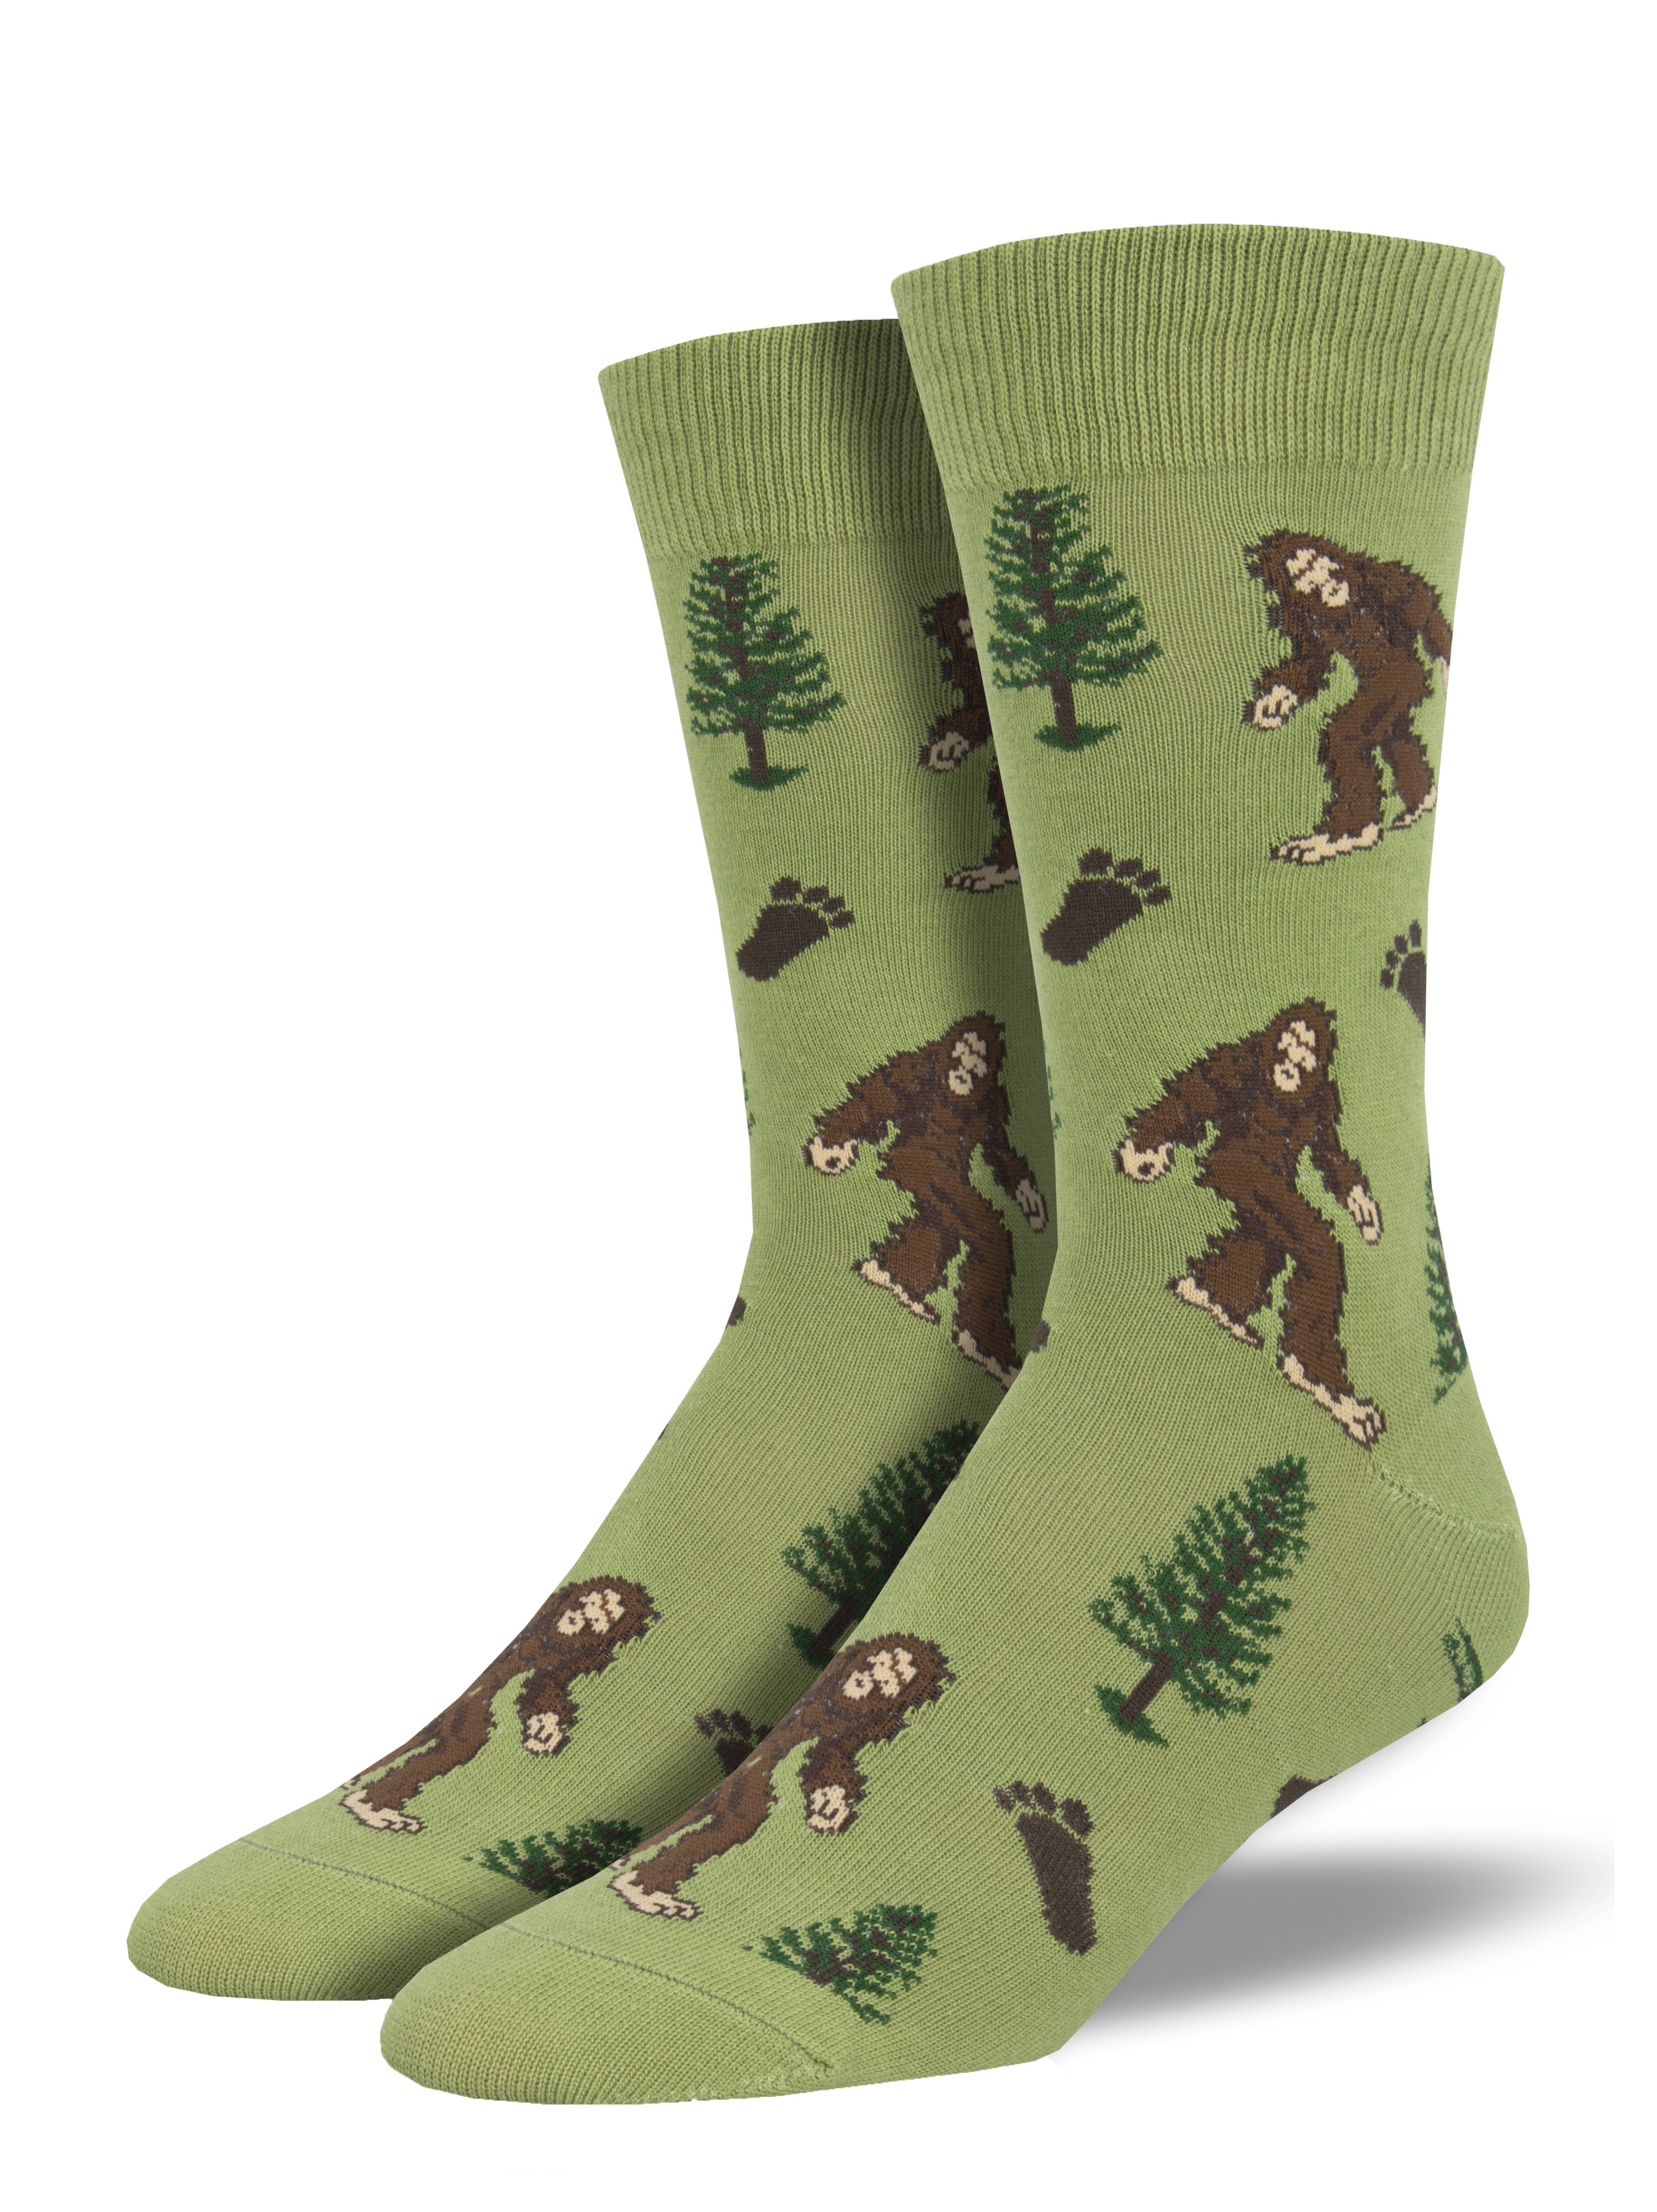 Men's "Bigfoot" Socks